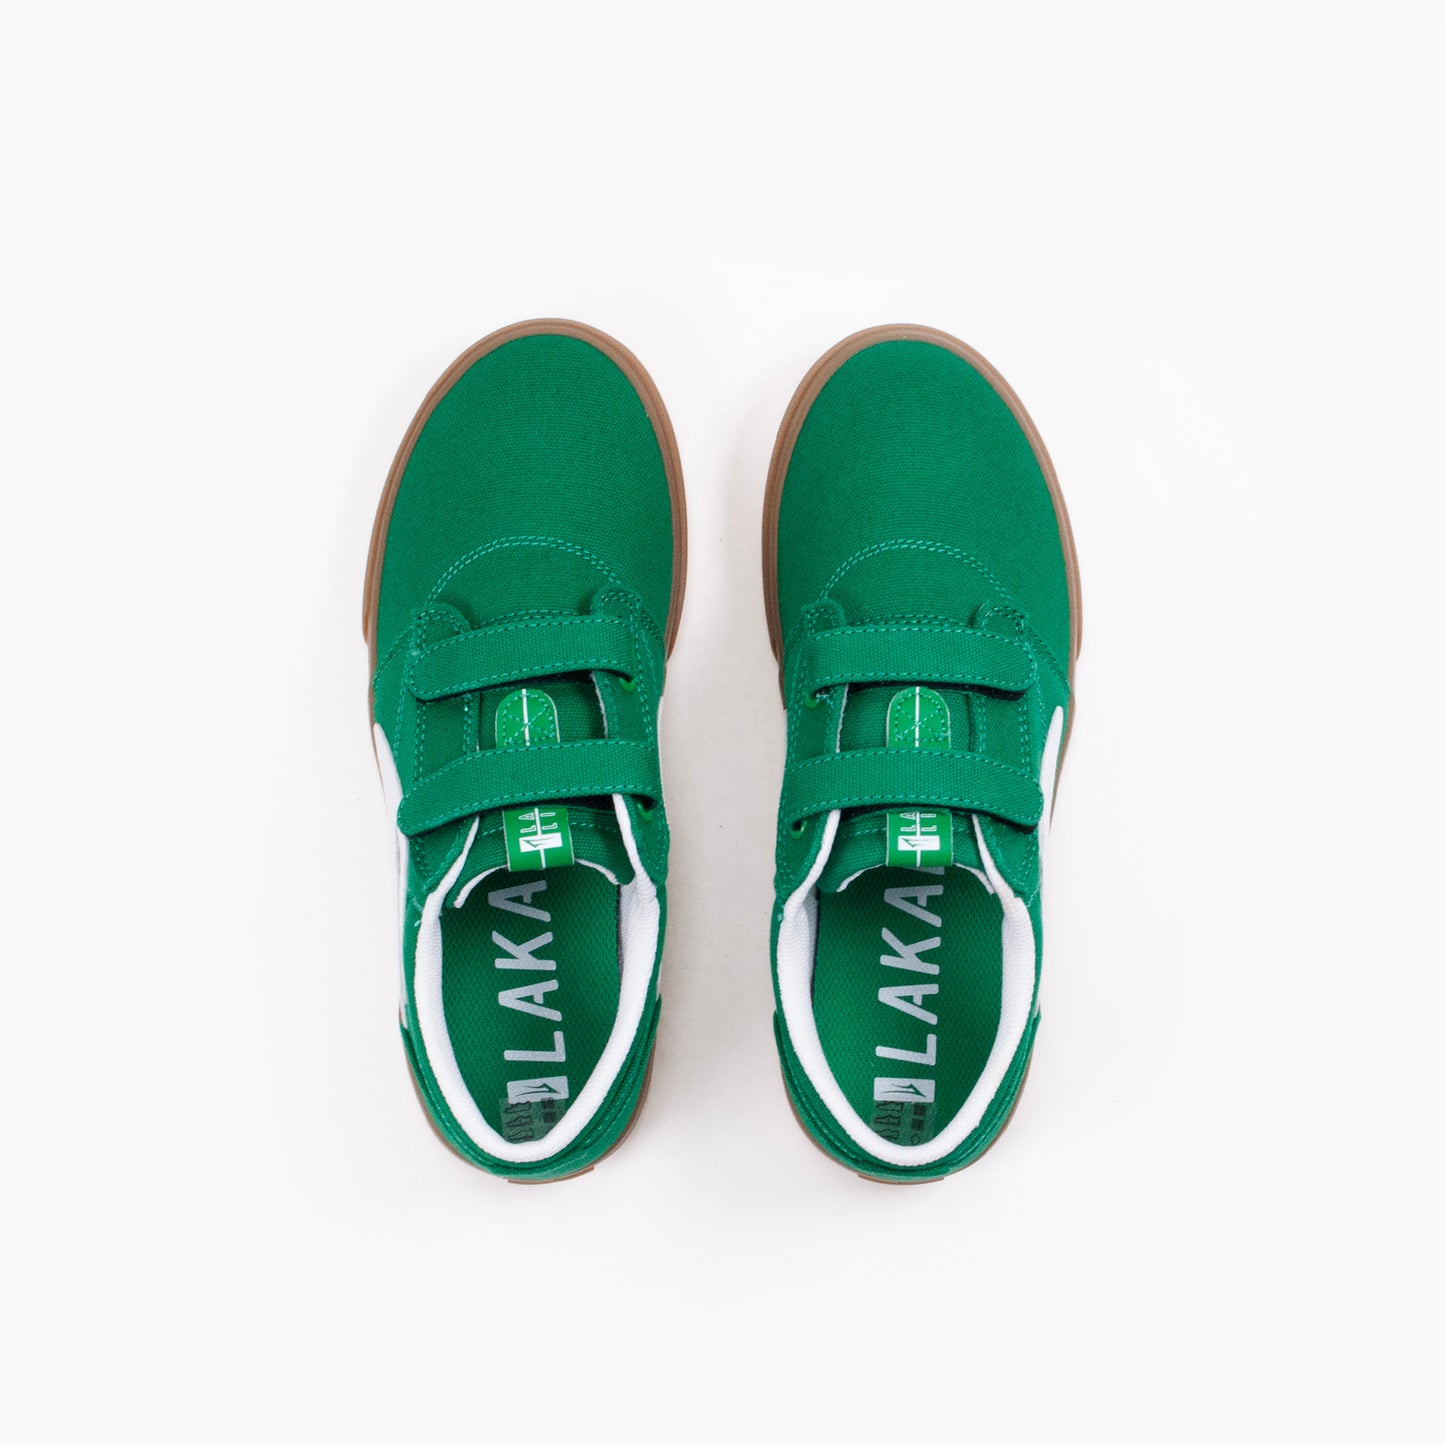 Lakai Griffin Kids Canvas Shoes - Green/ Gum - Prime Delux Store